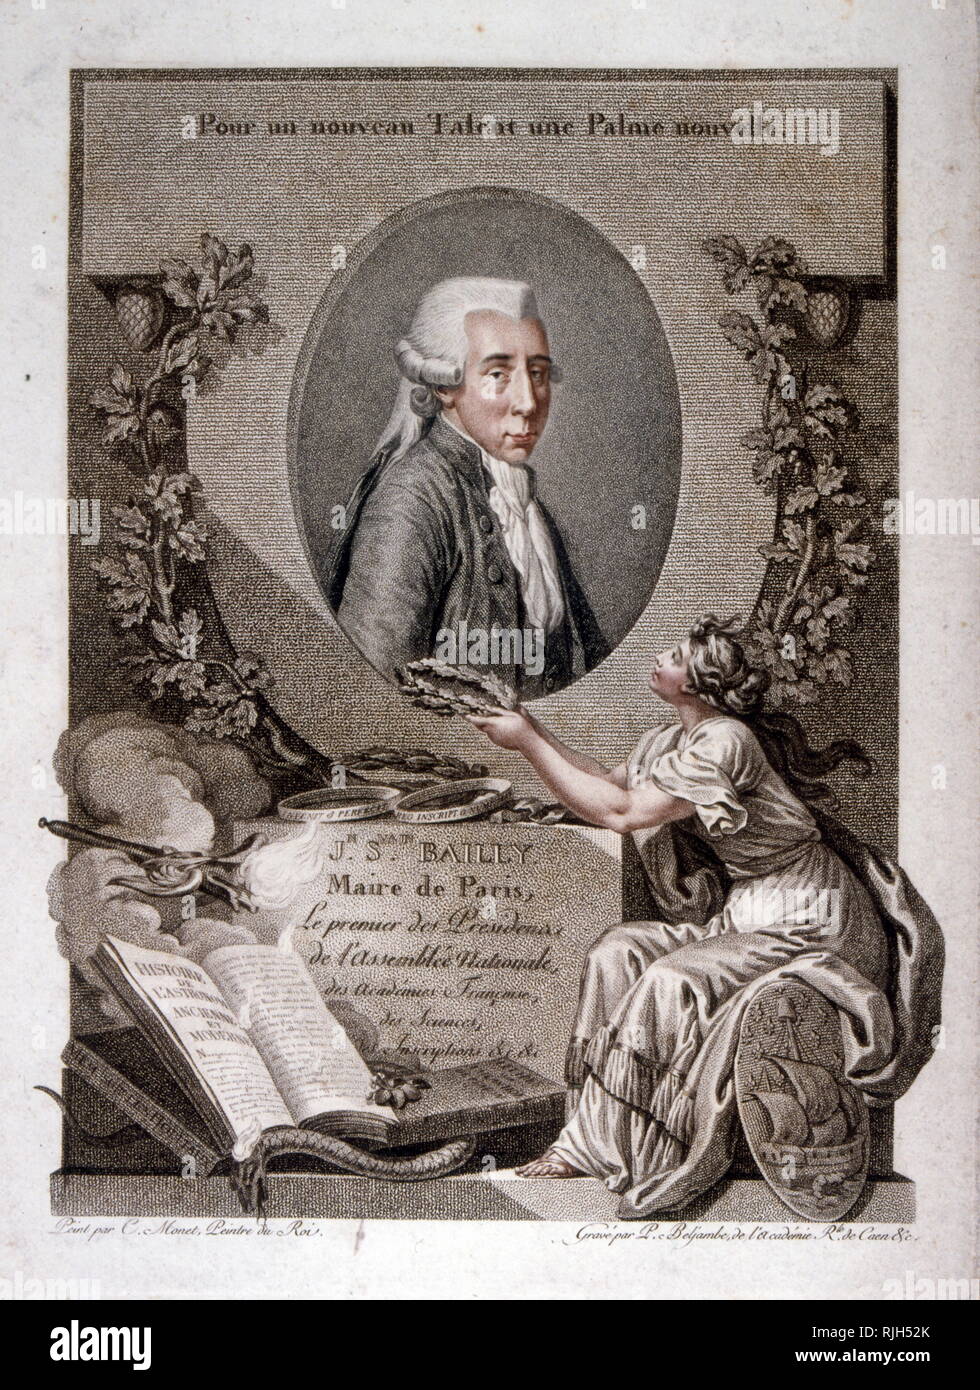 Jean Sylvain Bailly (1736 - 1793), mathématicien, astronome Français franc-maçon, leader politique de la première partie de la Révolution française. Il a présidé la cour de tennis serment, a été maire de Paris de 1789 à 1791, et ont finalement été guillotinée pendant la terreur. Banque D'Images